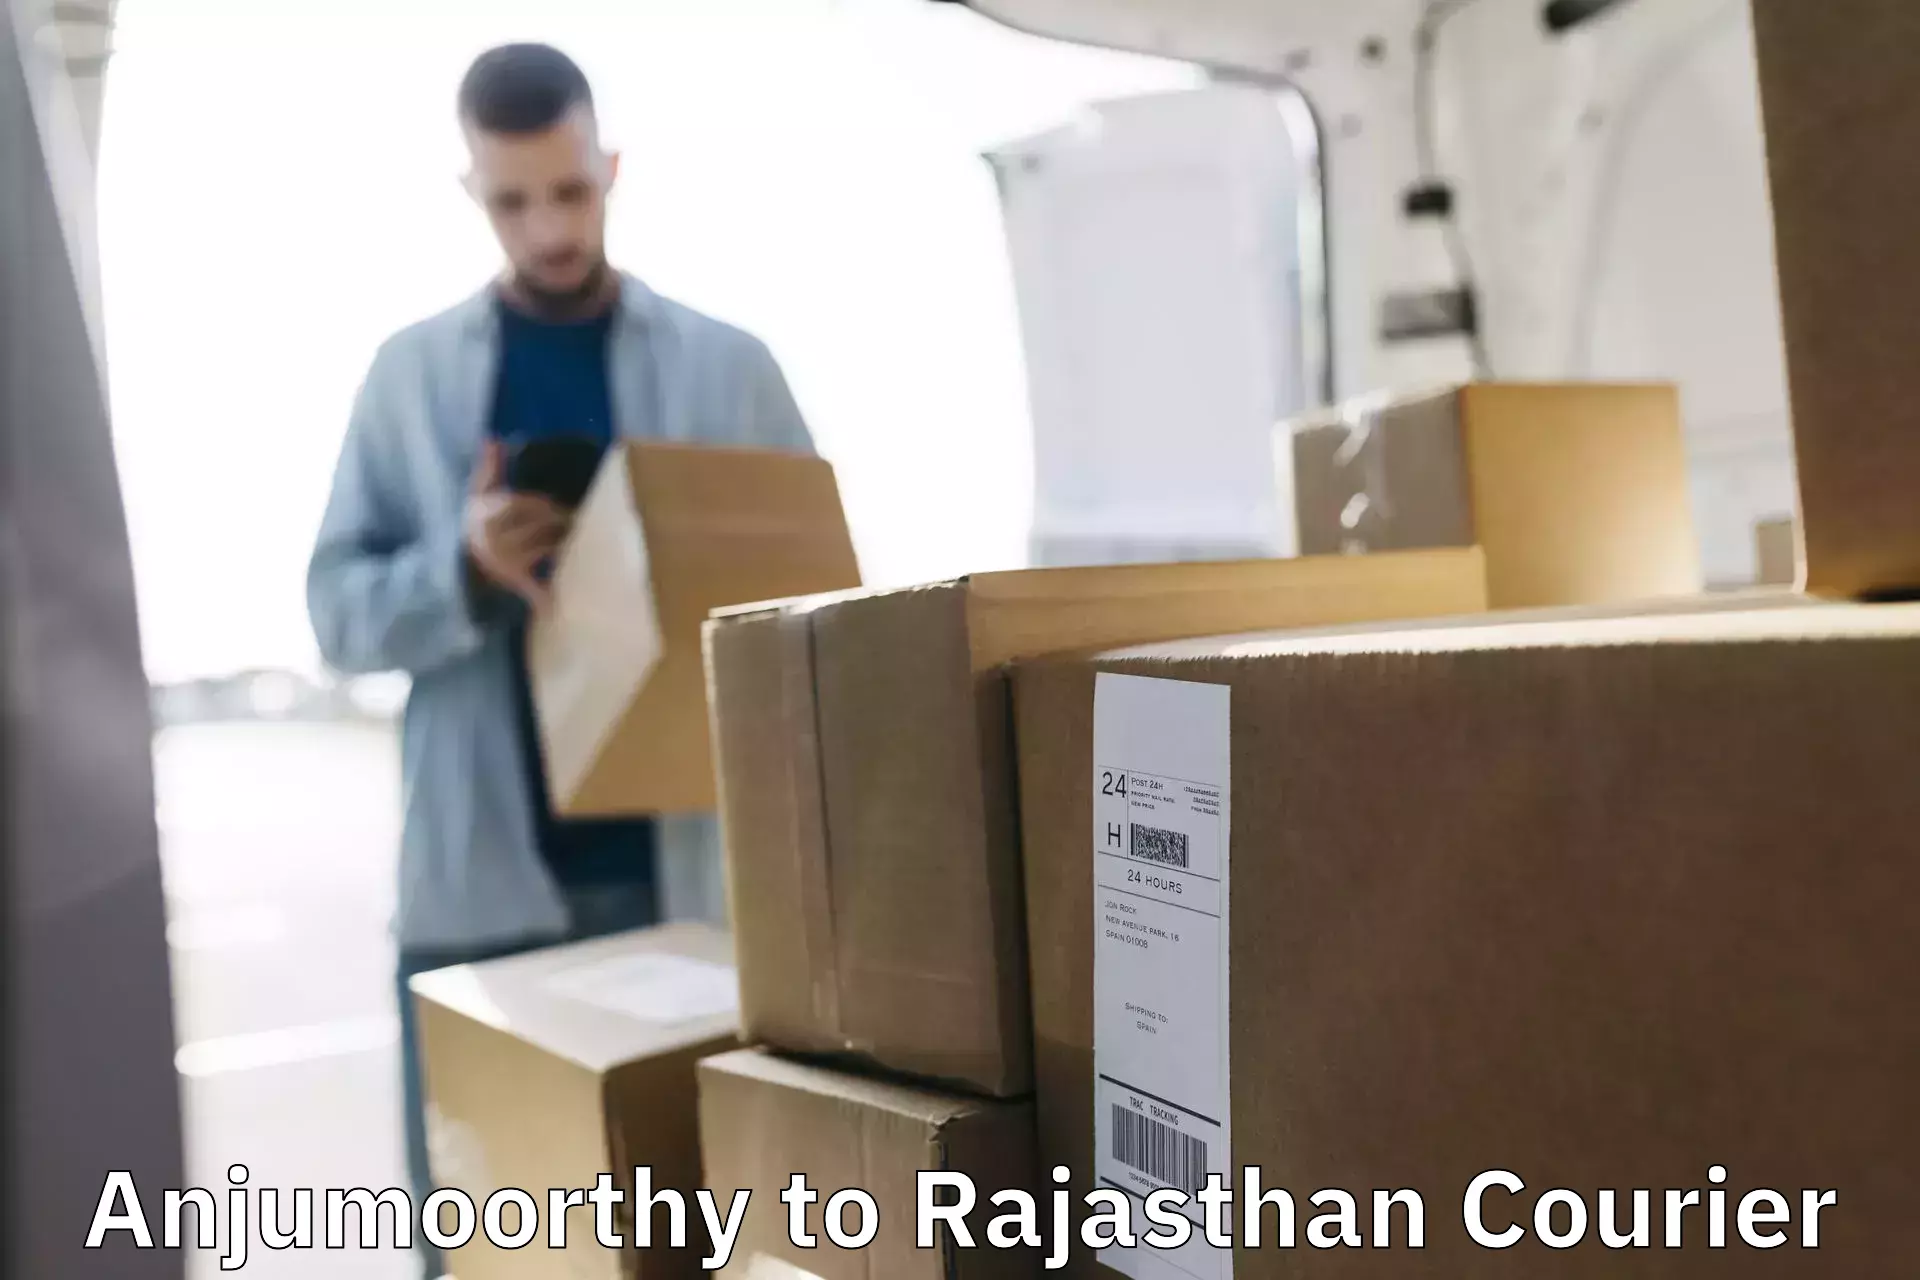 Digital courier platforms Anjumoorthy to Rajasthan